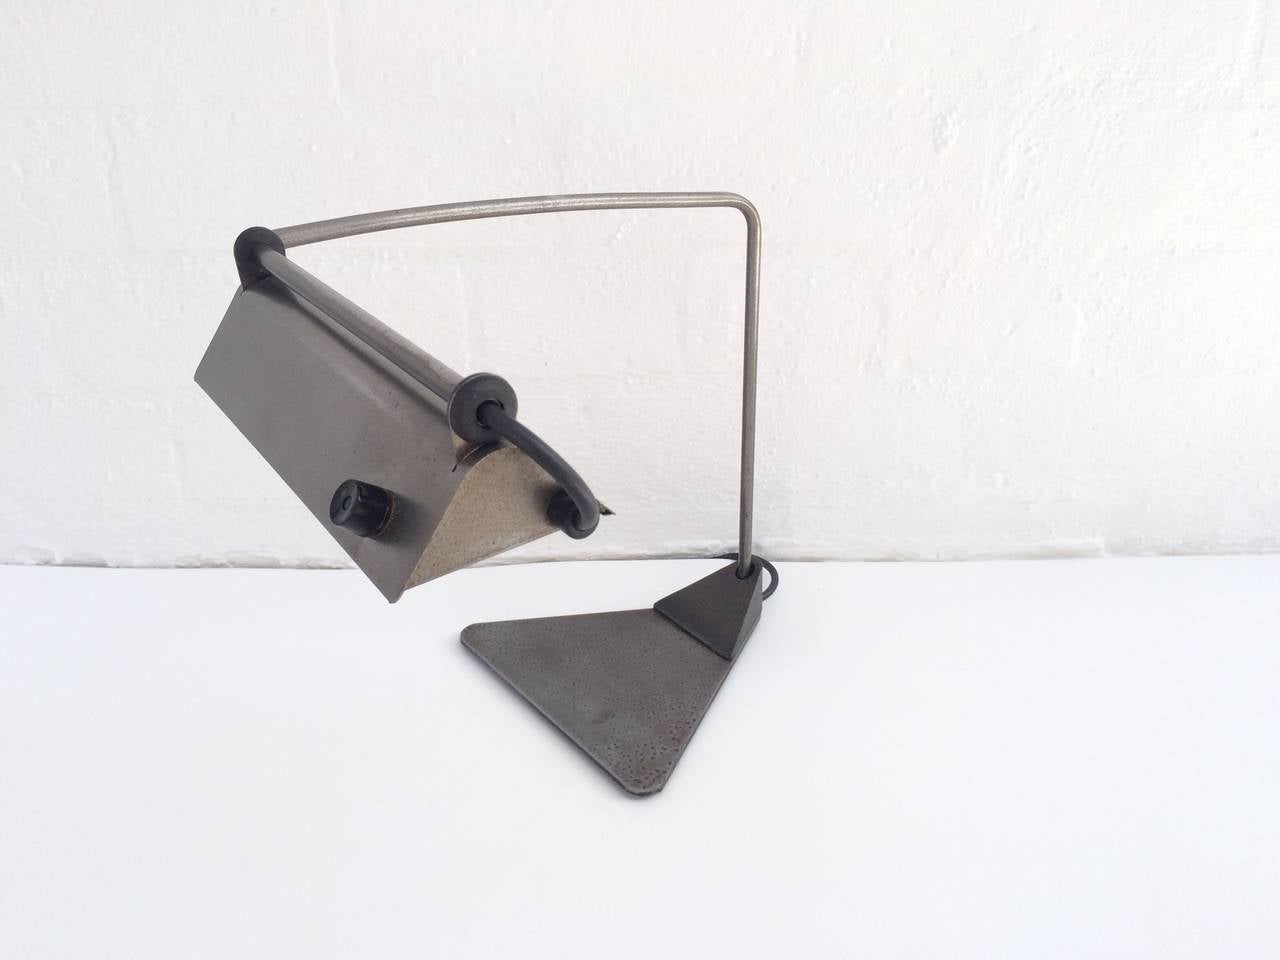 stainless steel desk lamp